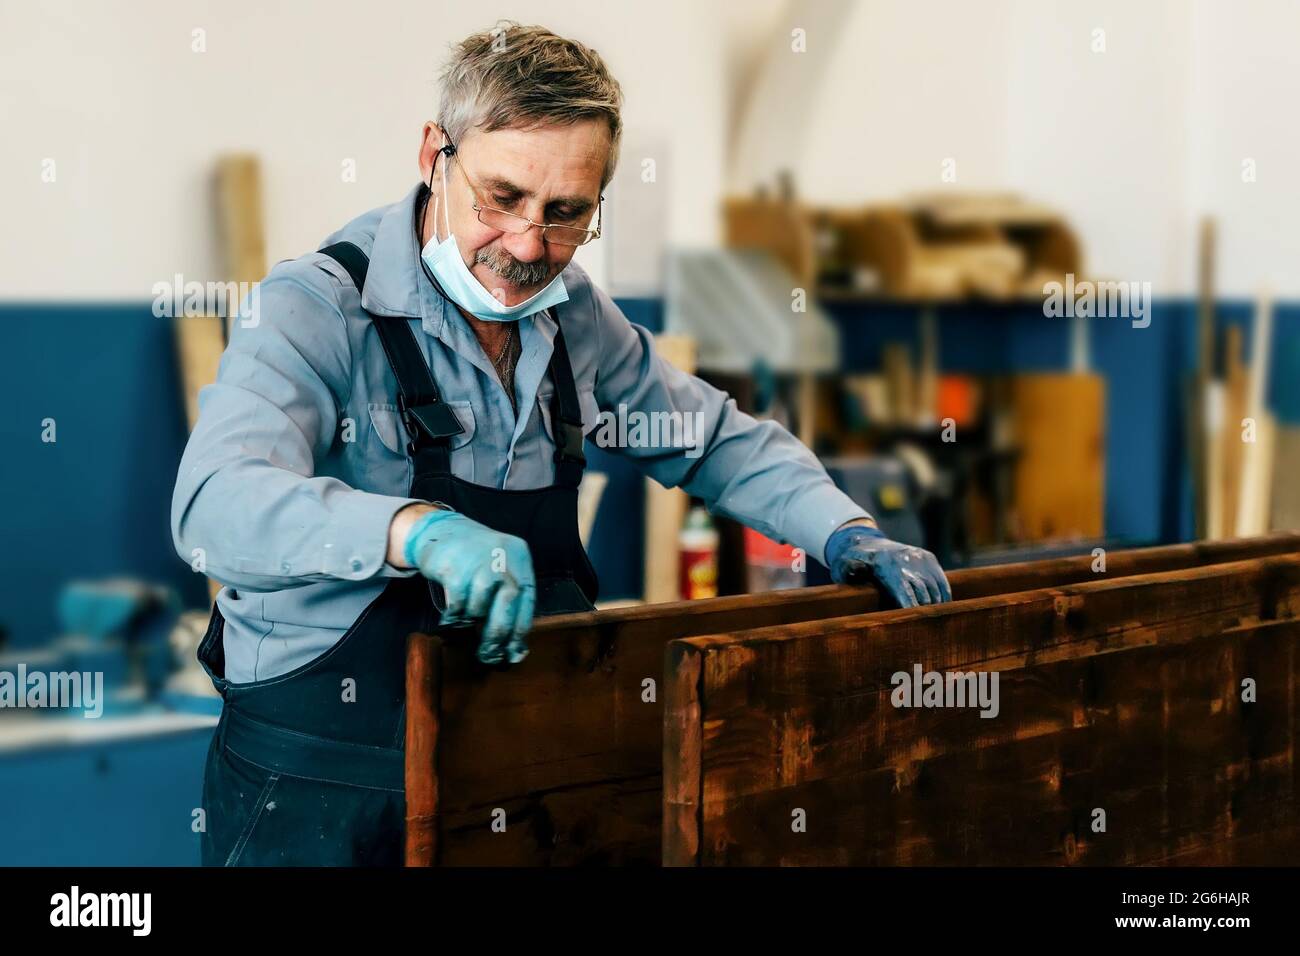 Un homme âgé peint des panneaux de bois avec du vernis foncé dans un atelier de menuiserie. Un retraité dans un masque médical gagne un emploi à temps partiel comme ébéniste. Travail physique Banque D'Images